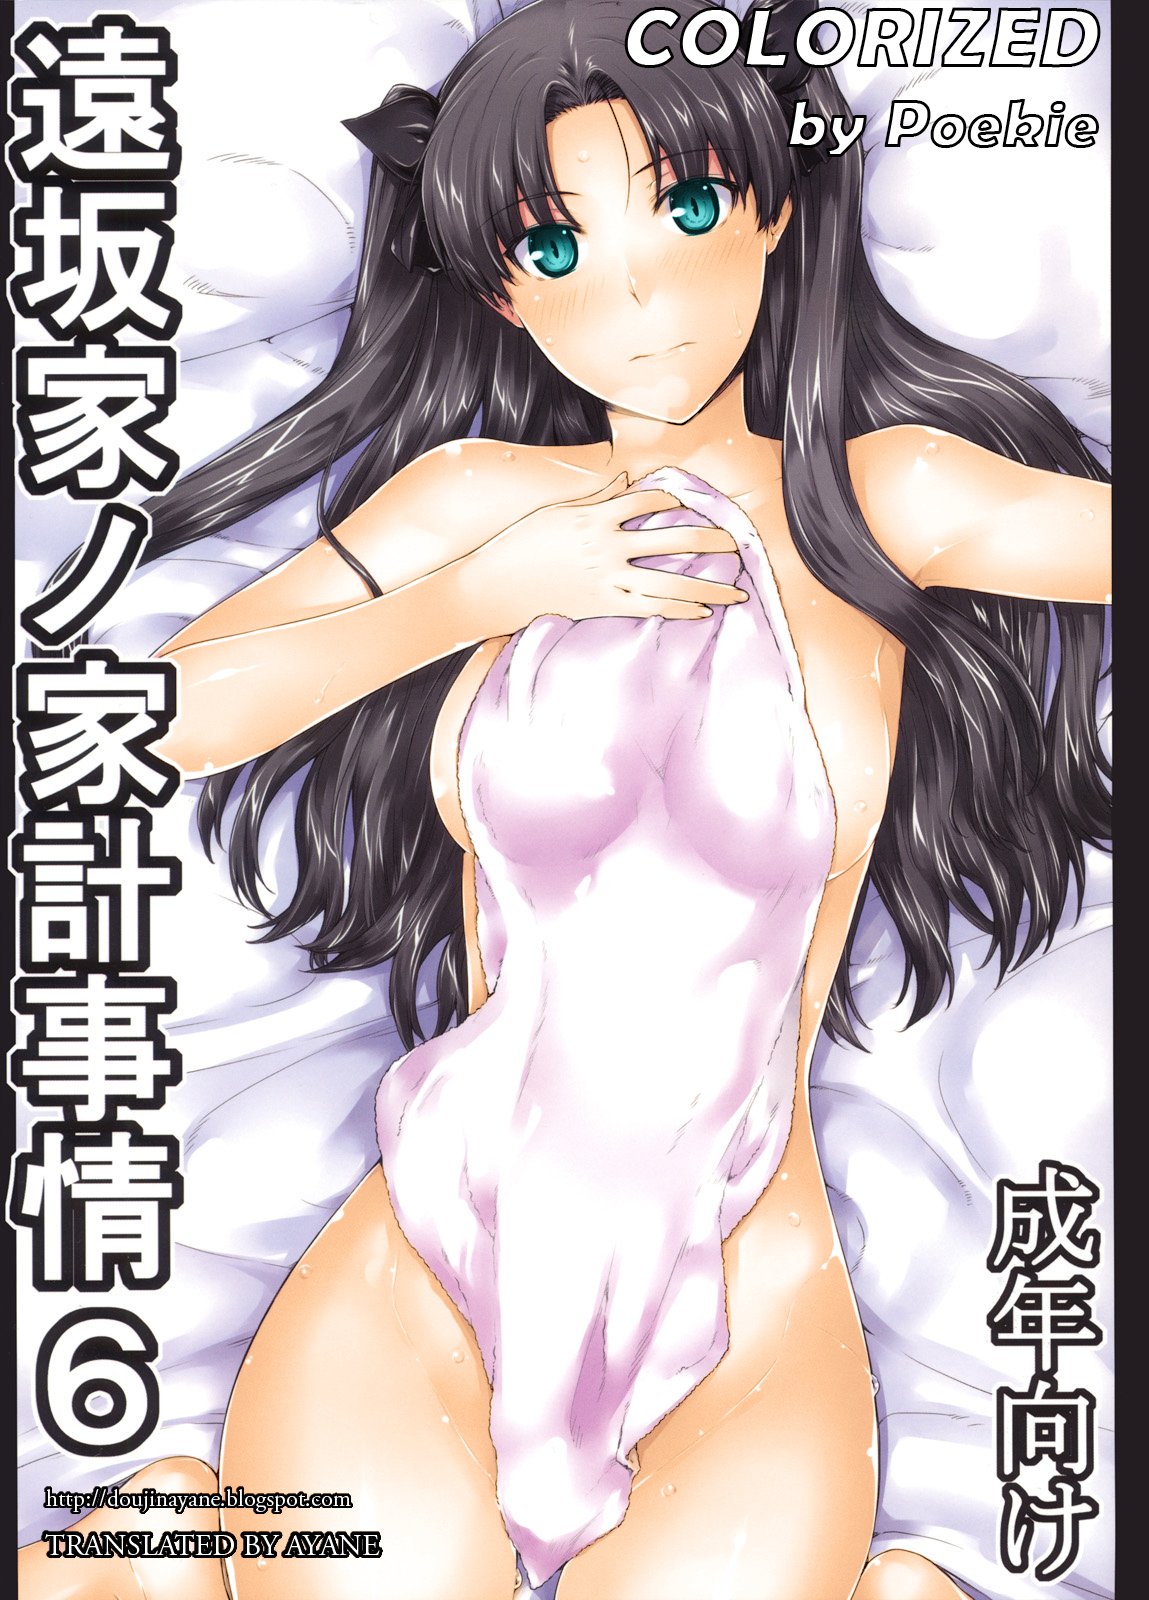 Rin tohsaka porn comic